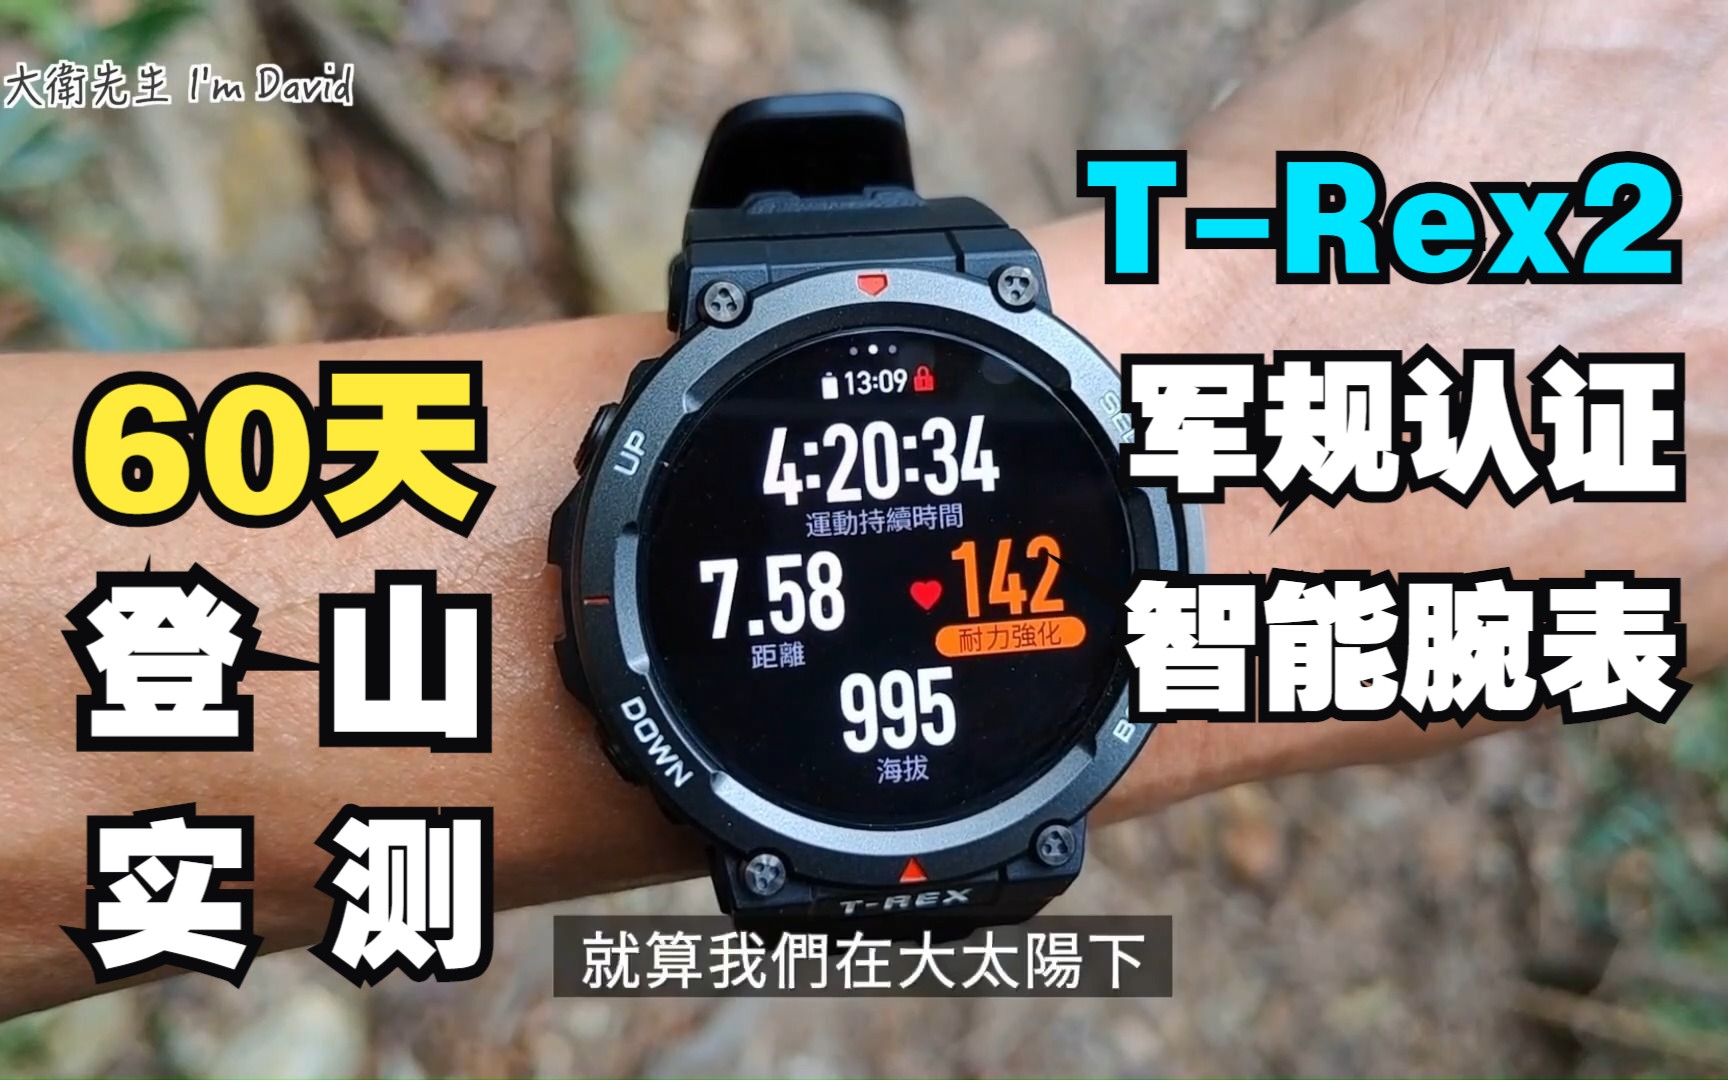 【搬运】千元价位的华米T-Rex2真的不如Garmin手表？60天登山使用心得实测分享！